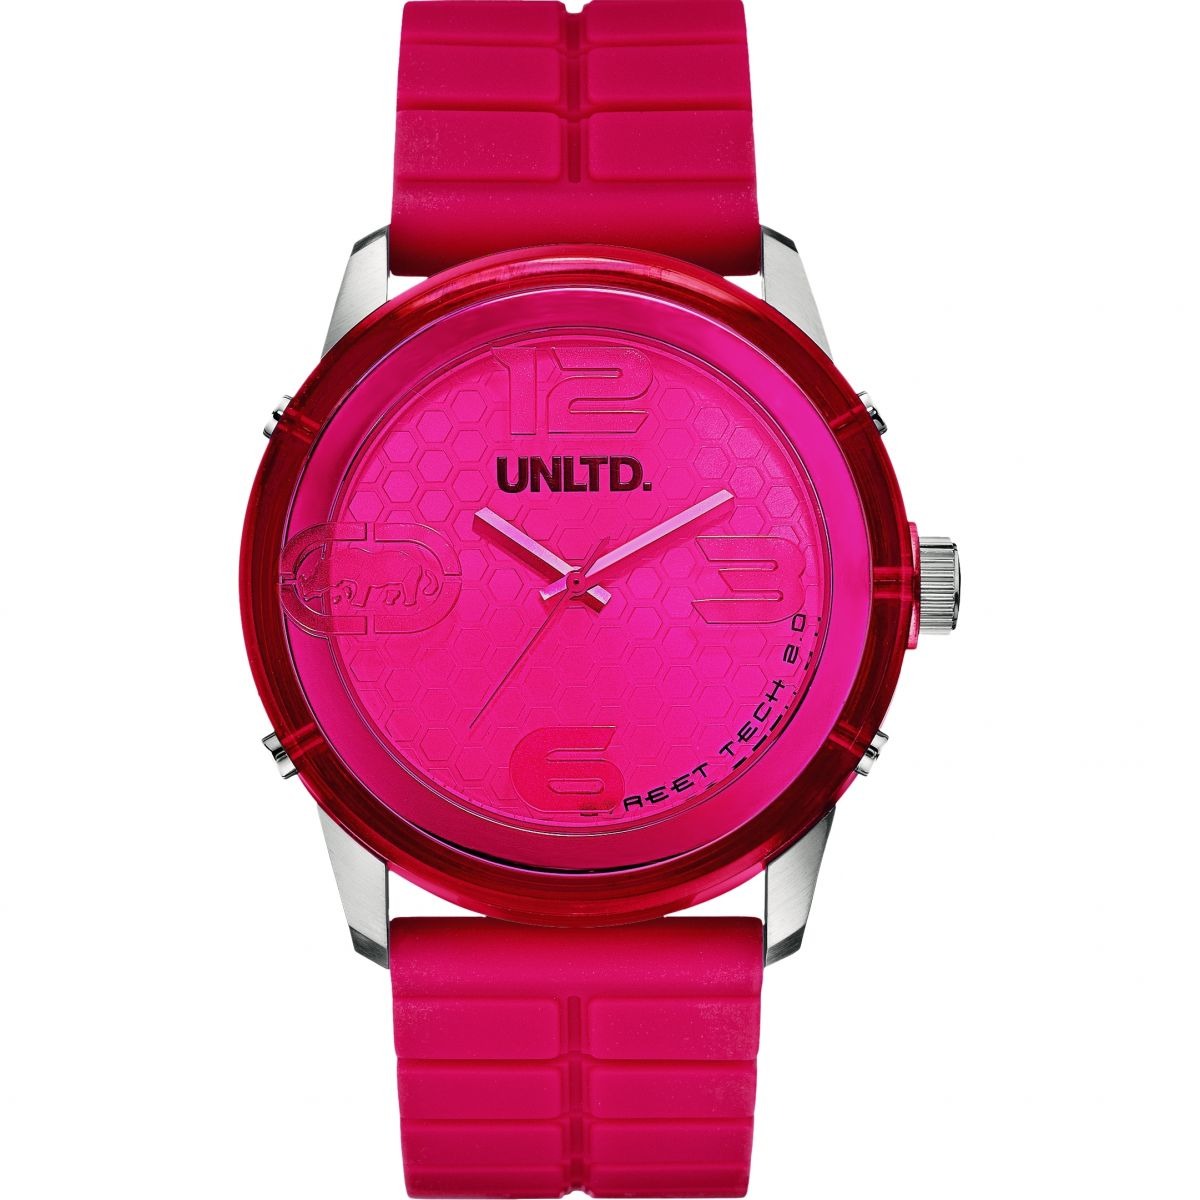 Unltd - Gent Watch in Pink from Watch Shop GOOFASH